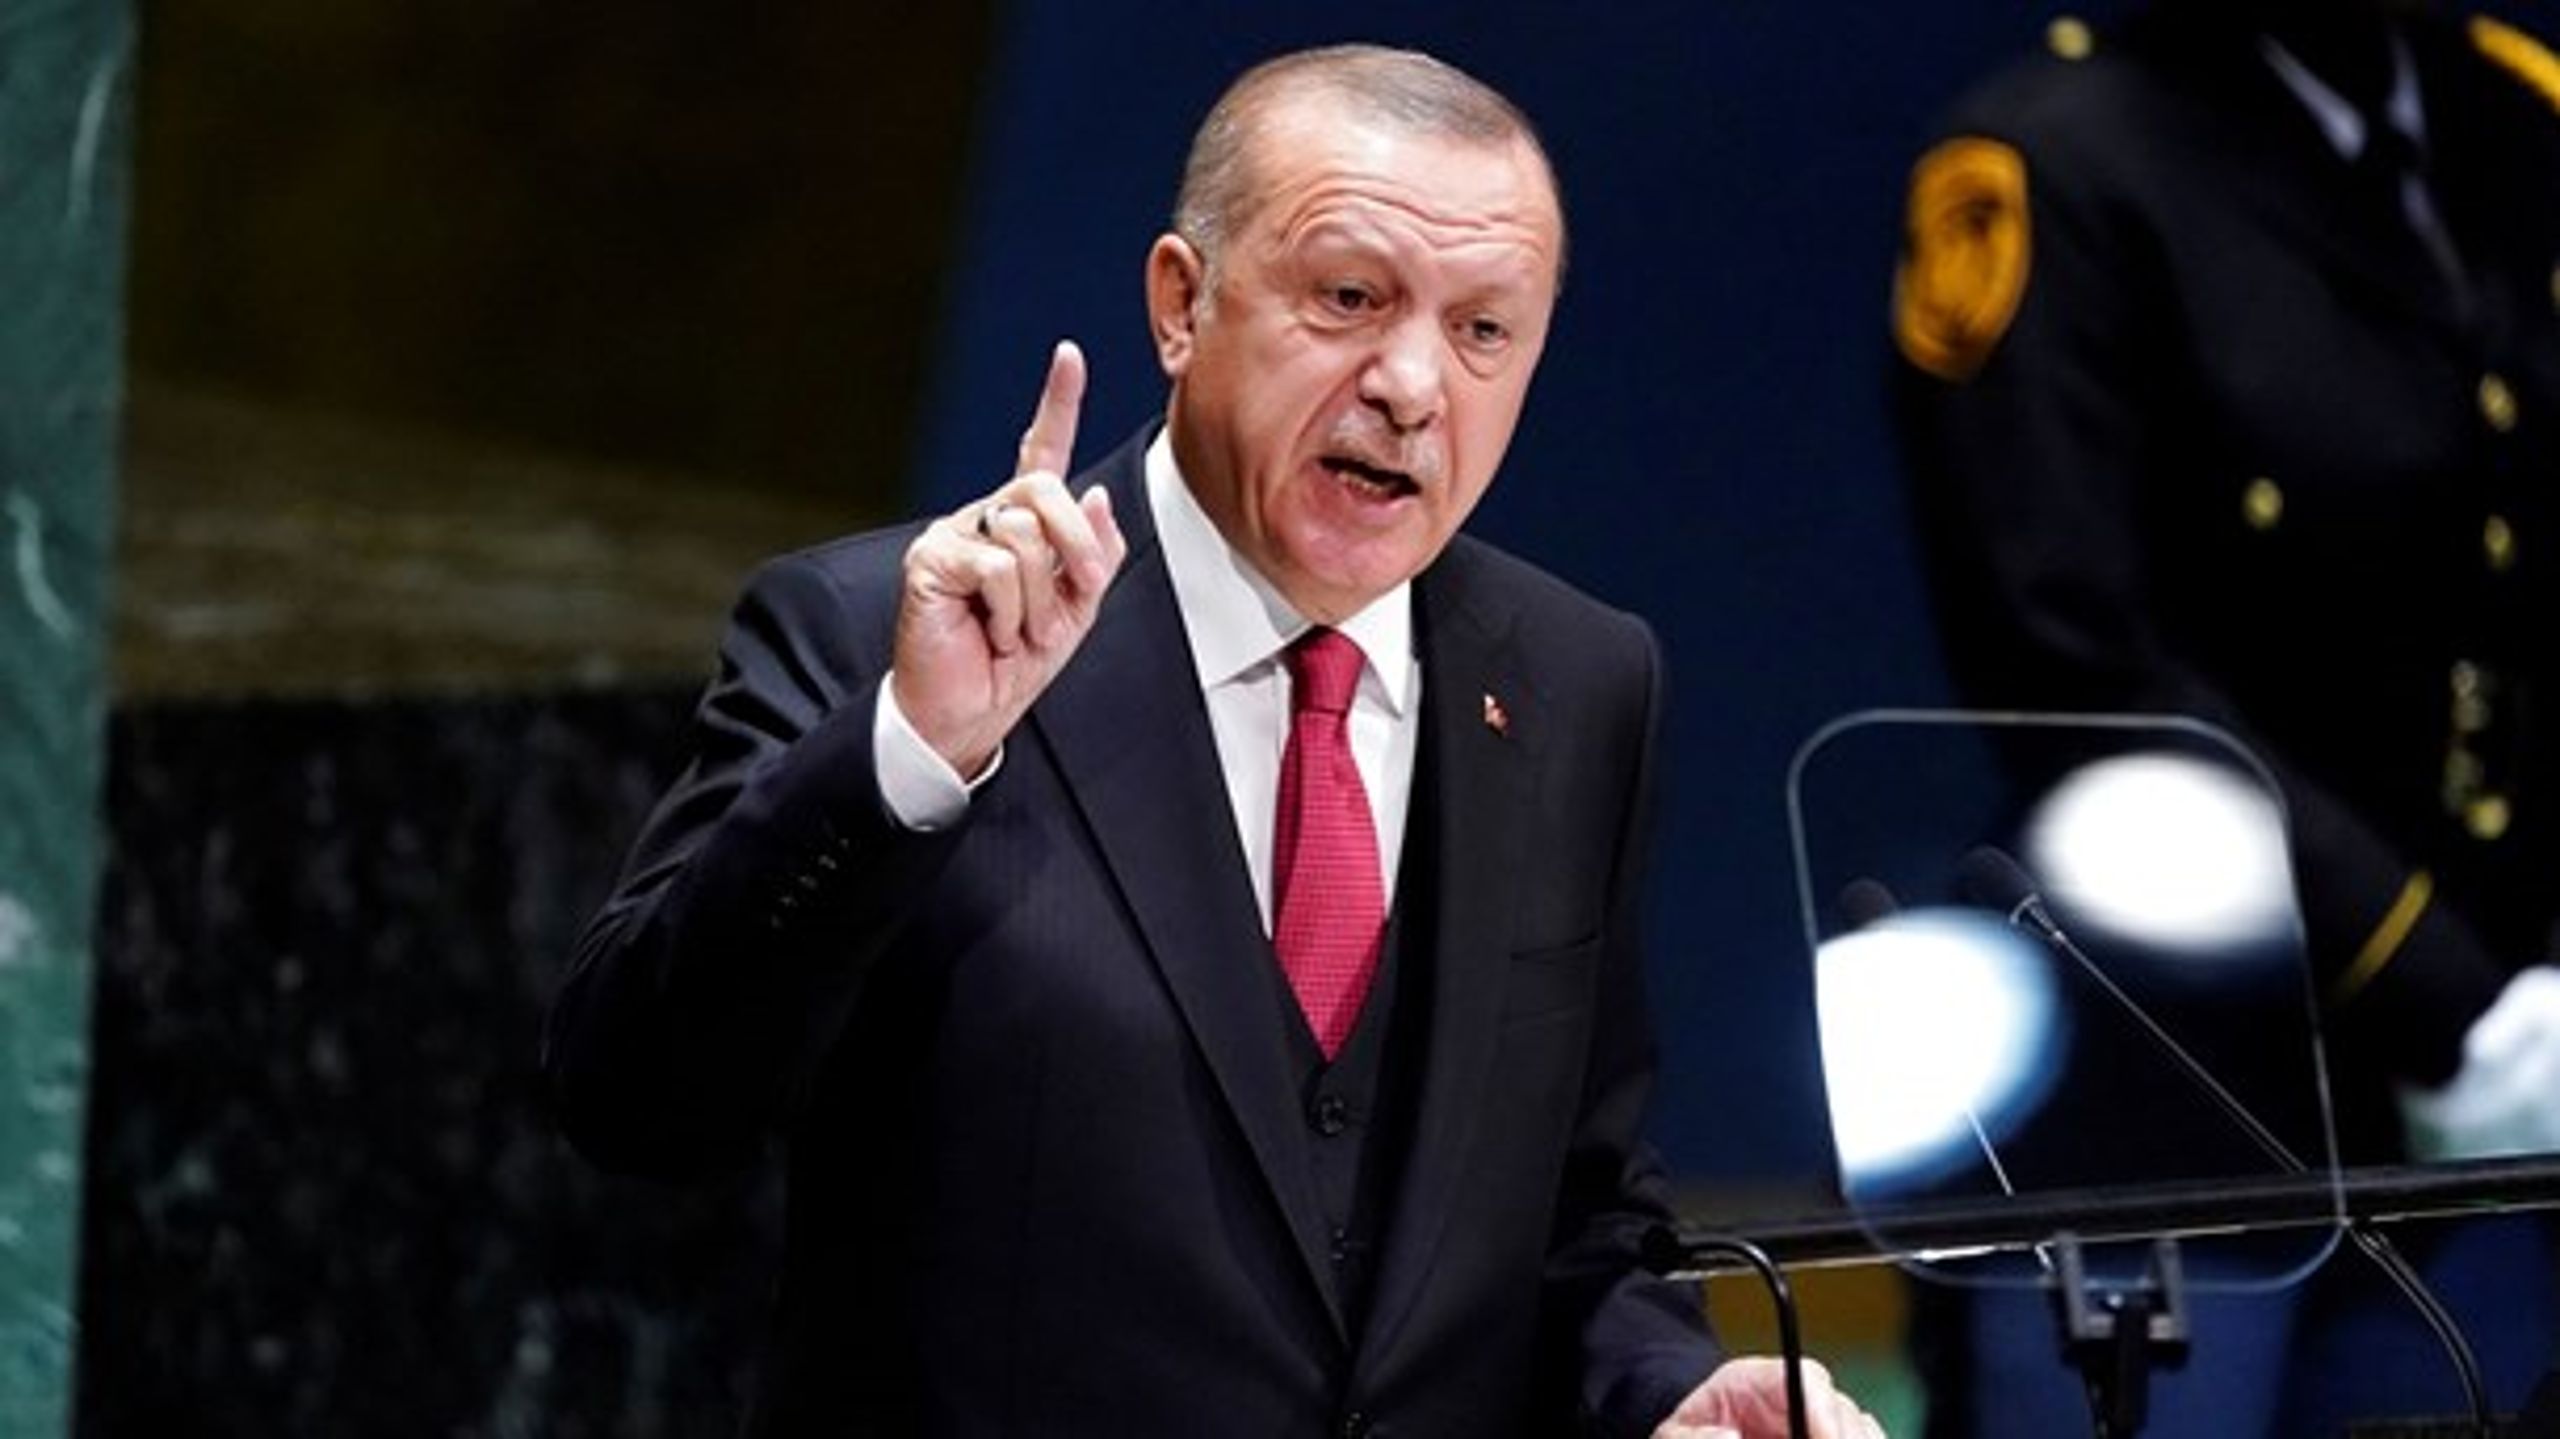 Tyrkiet med Præsident Erdogan i spidsen skal stoppe den evindelige forfølgelse af oppositionen i Tyrkiet, skriver&nbsp;Margrete Auken (SF) og Halime Oguz (SF).